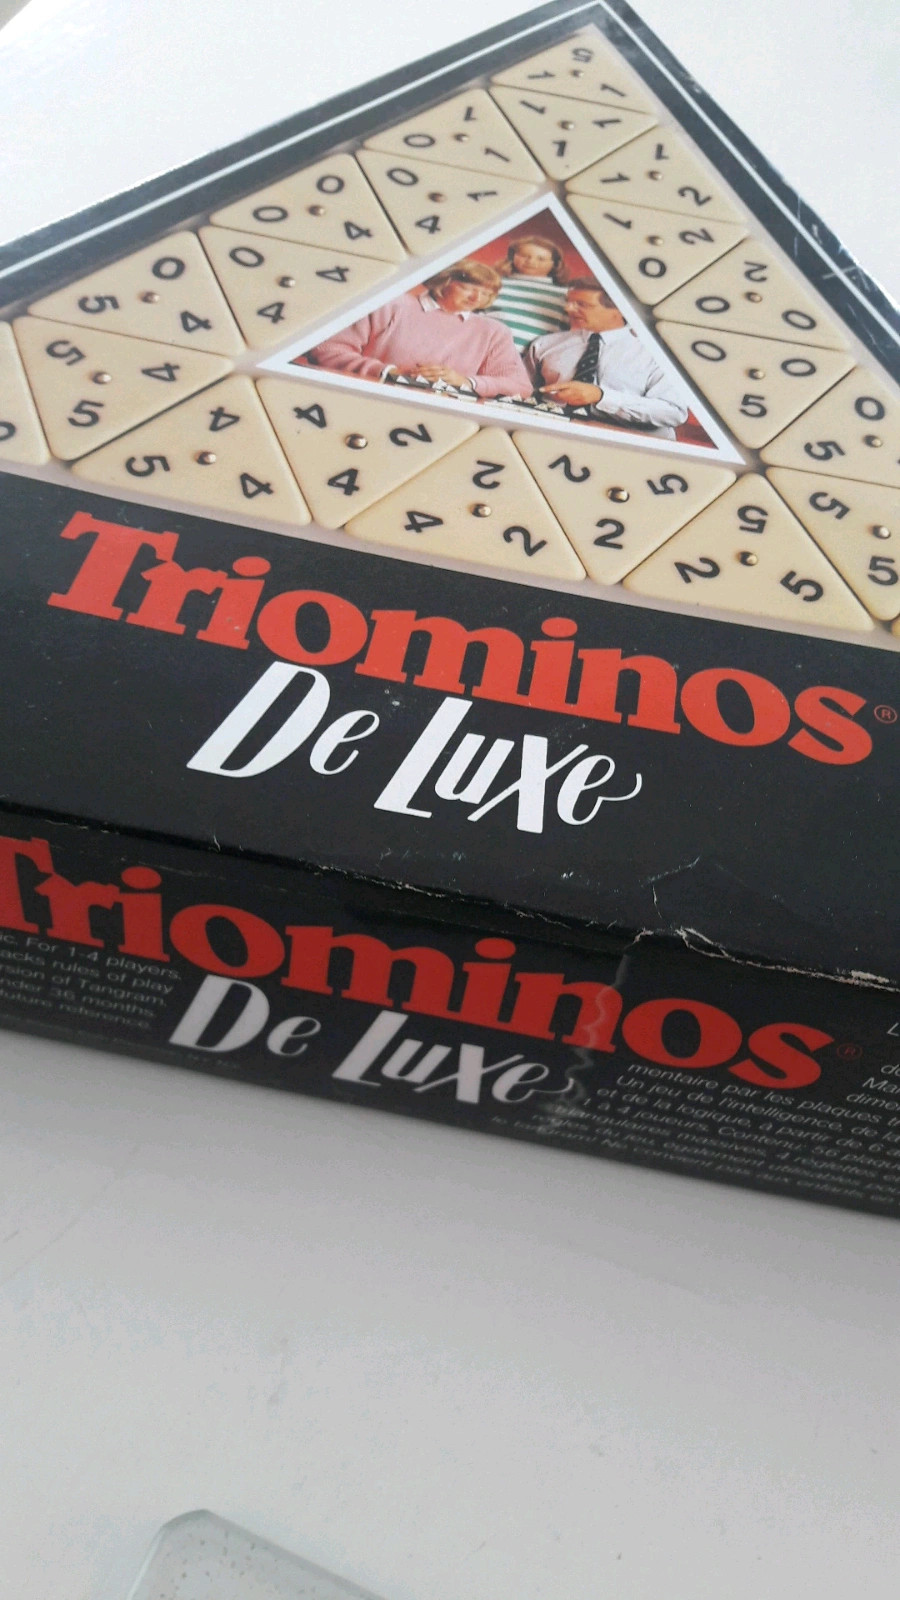 Triominos - Travel De Luxe - Triominos